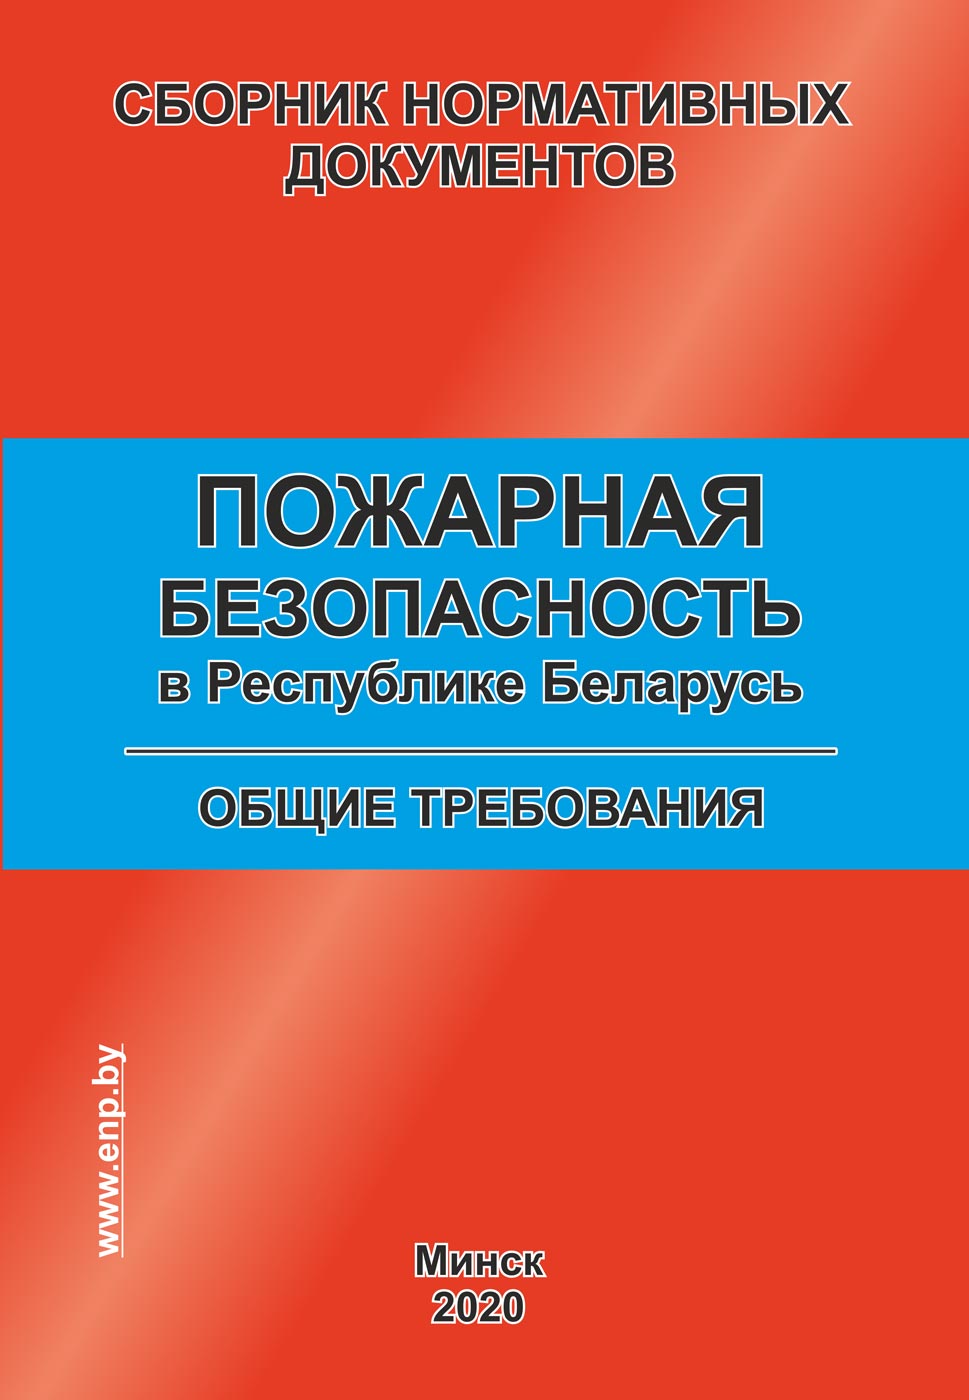 Закон о пожарной безопасности в Республике Беларусь: основные положения и требования